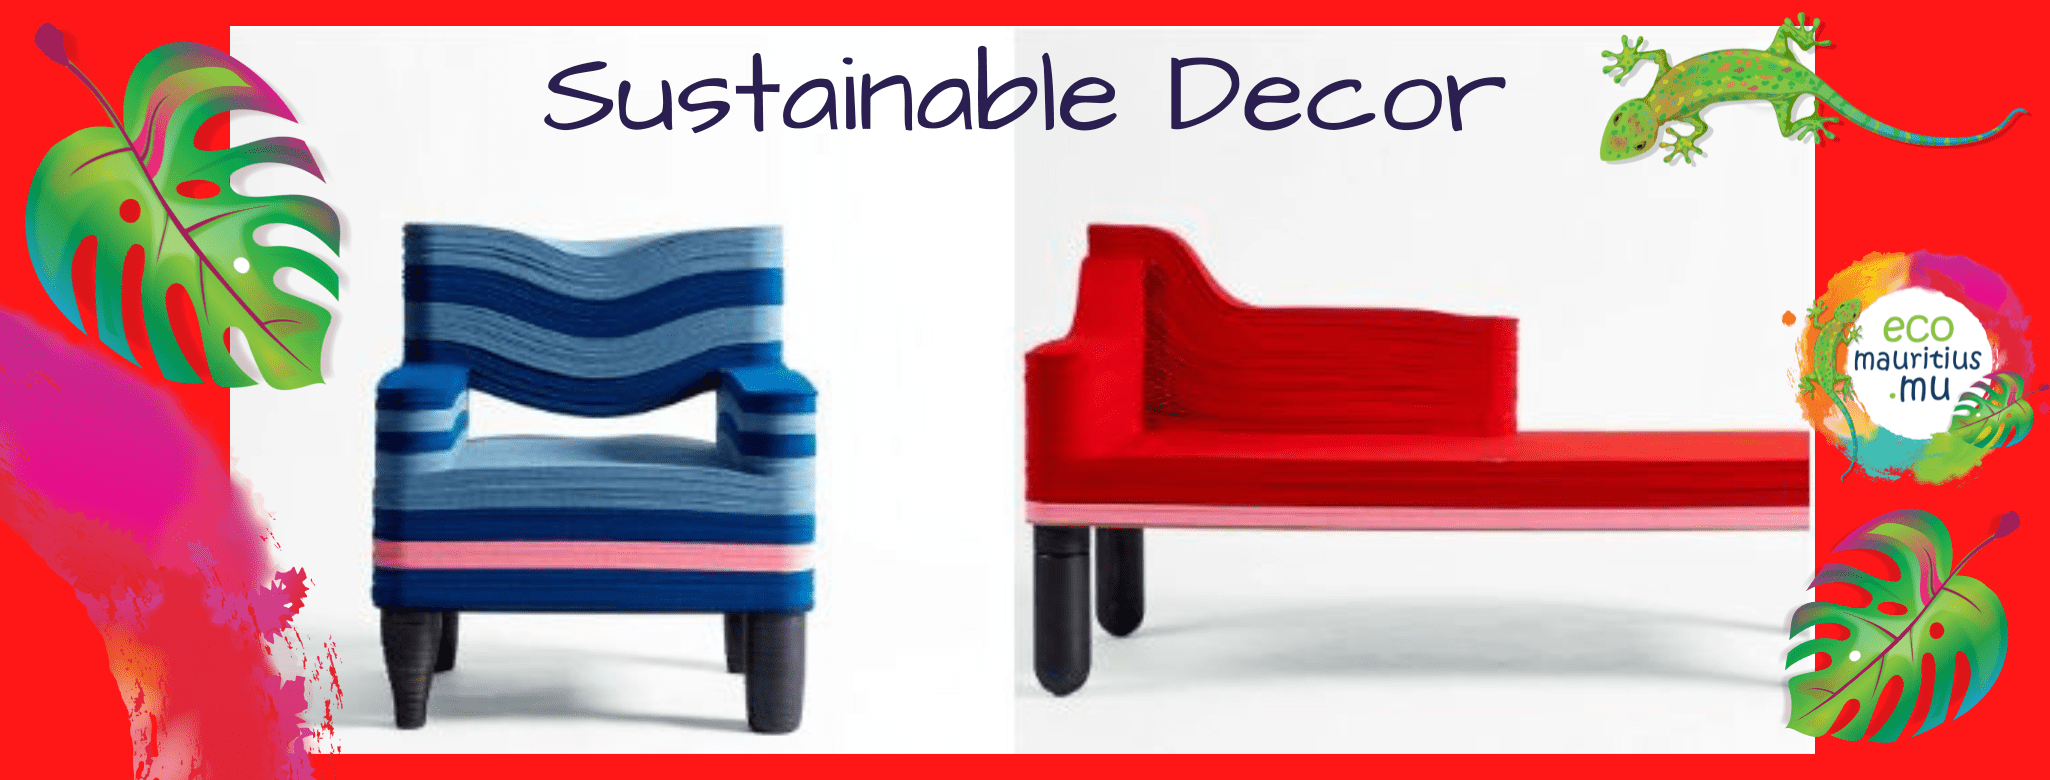 Sustainable Designer furnishing